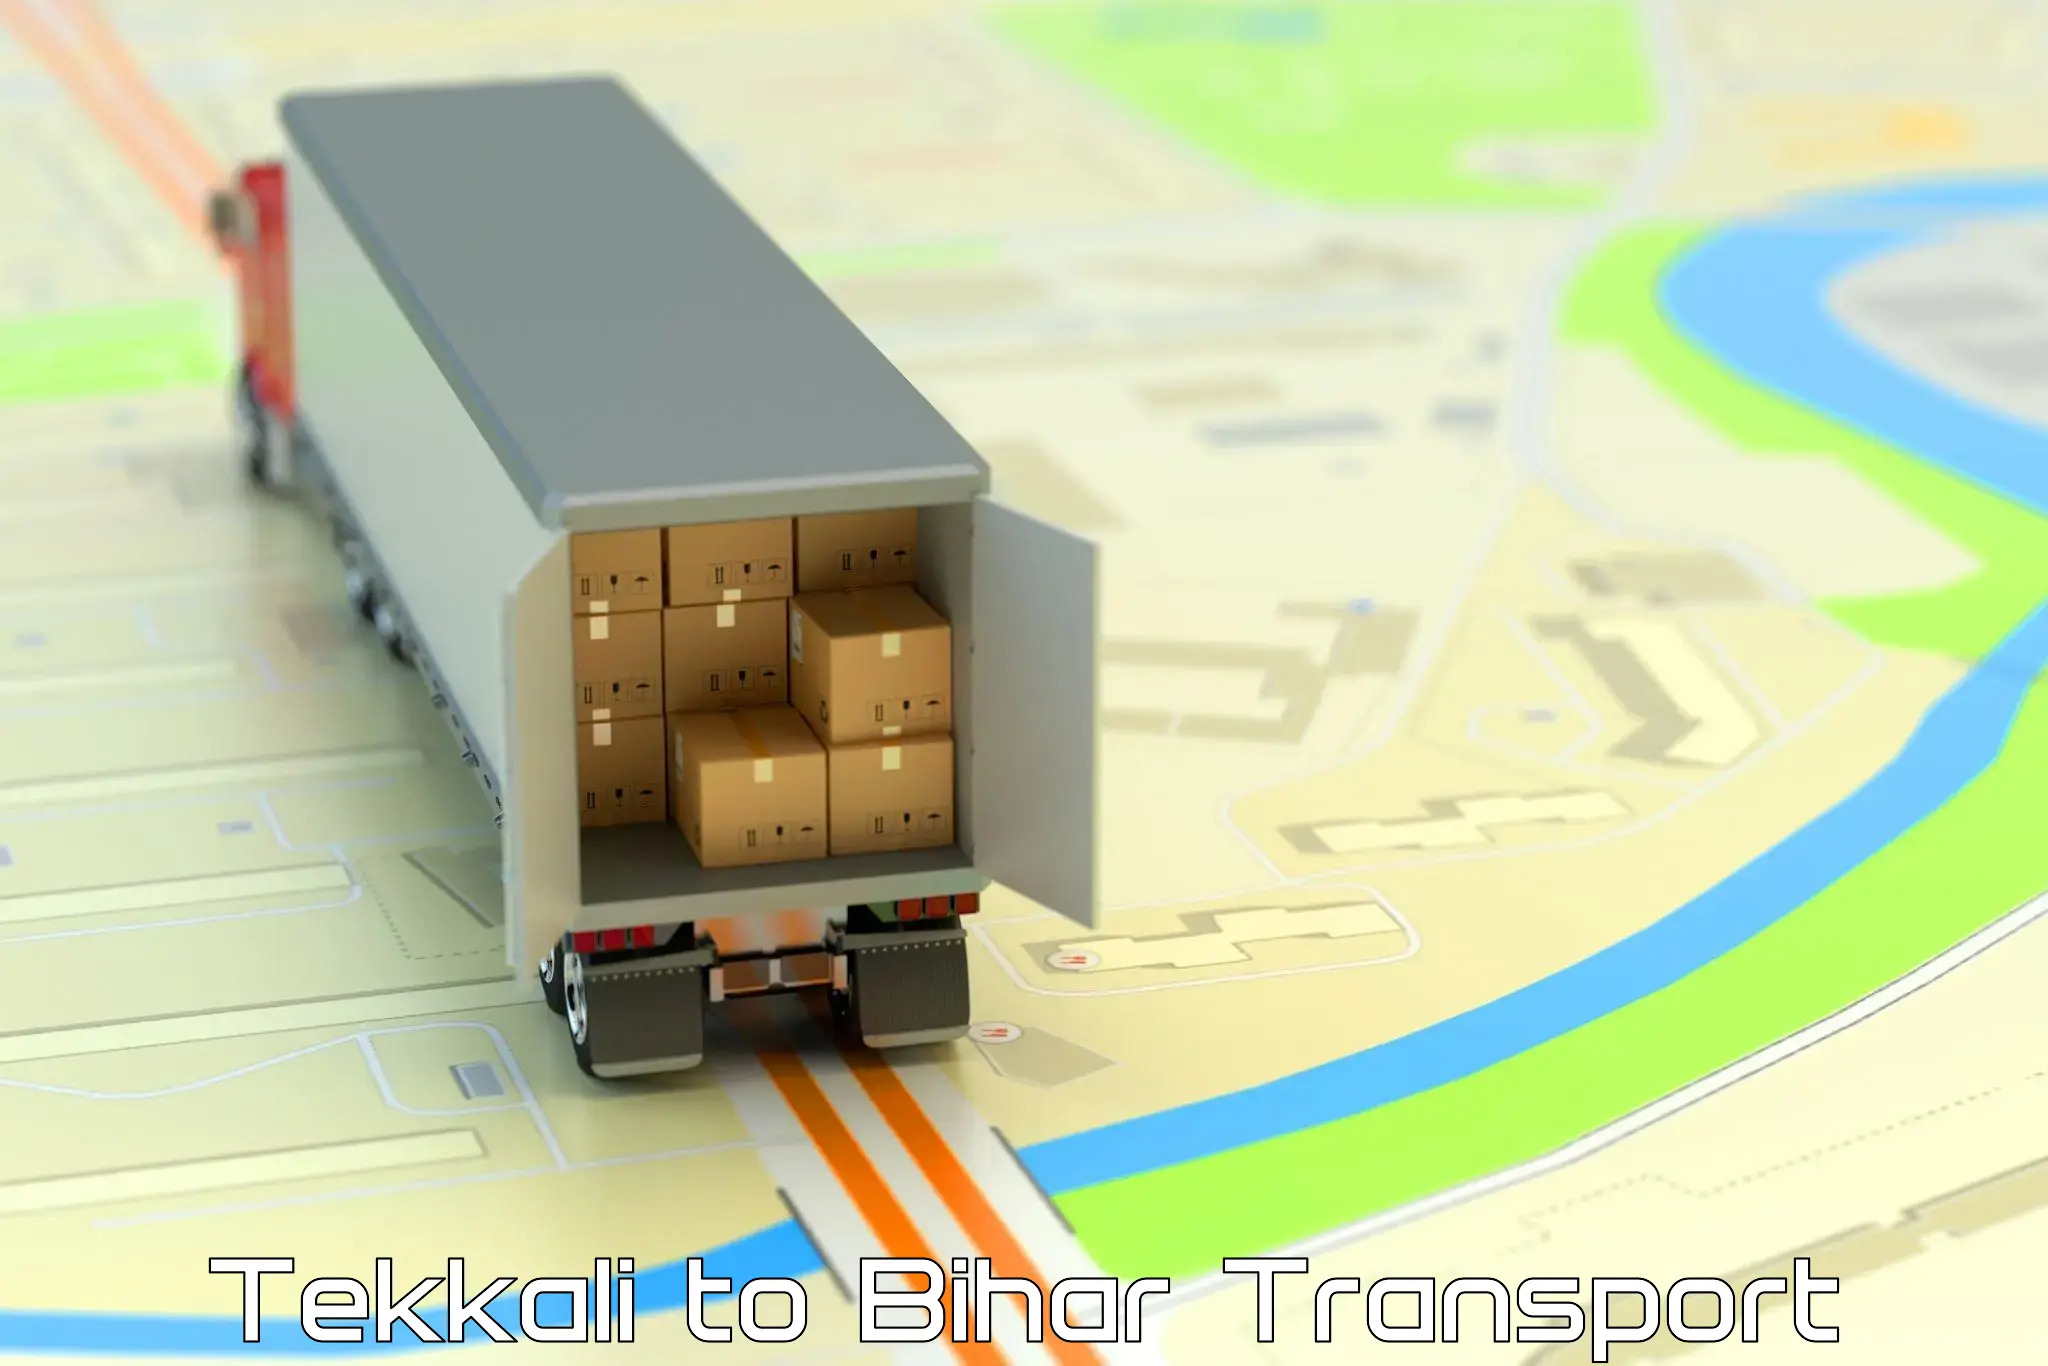 Nearest transport service Tekkali to Katihar